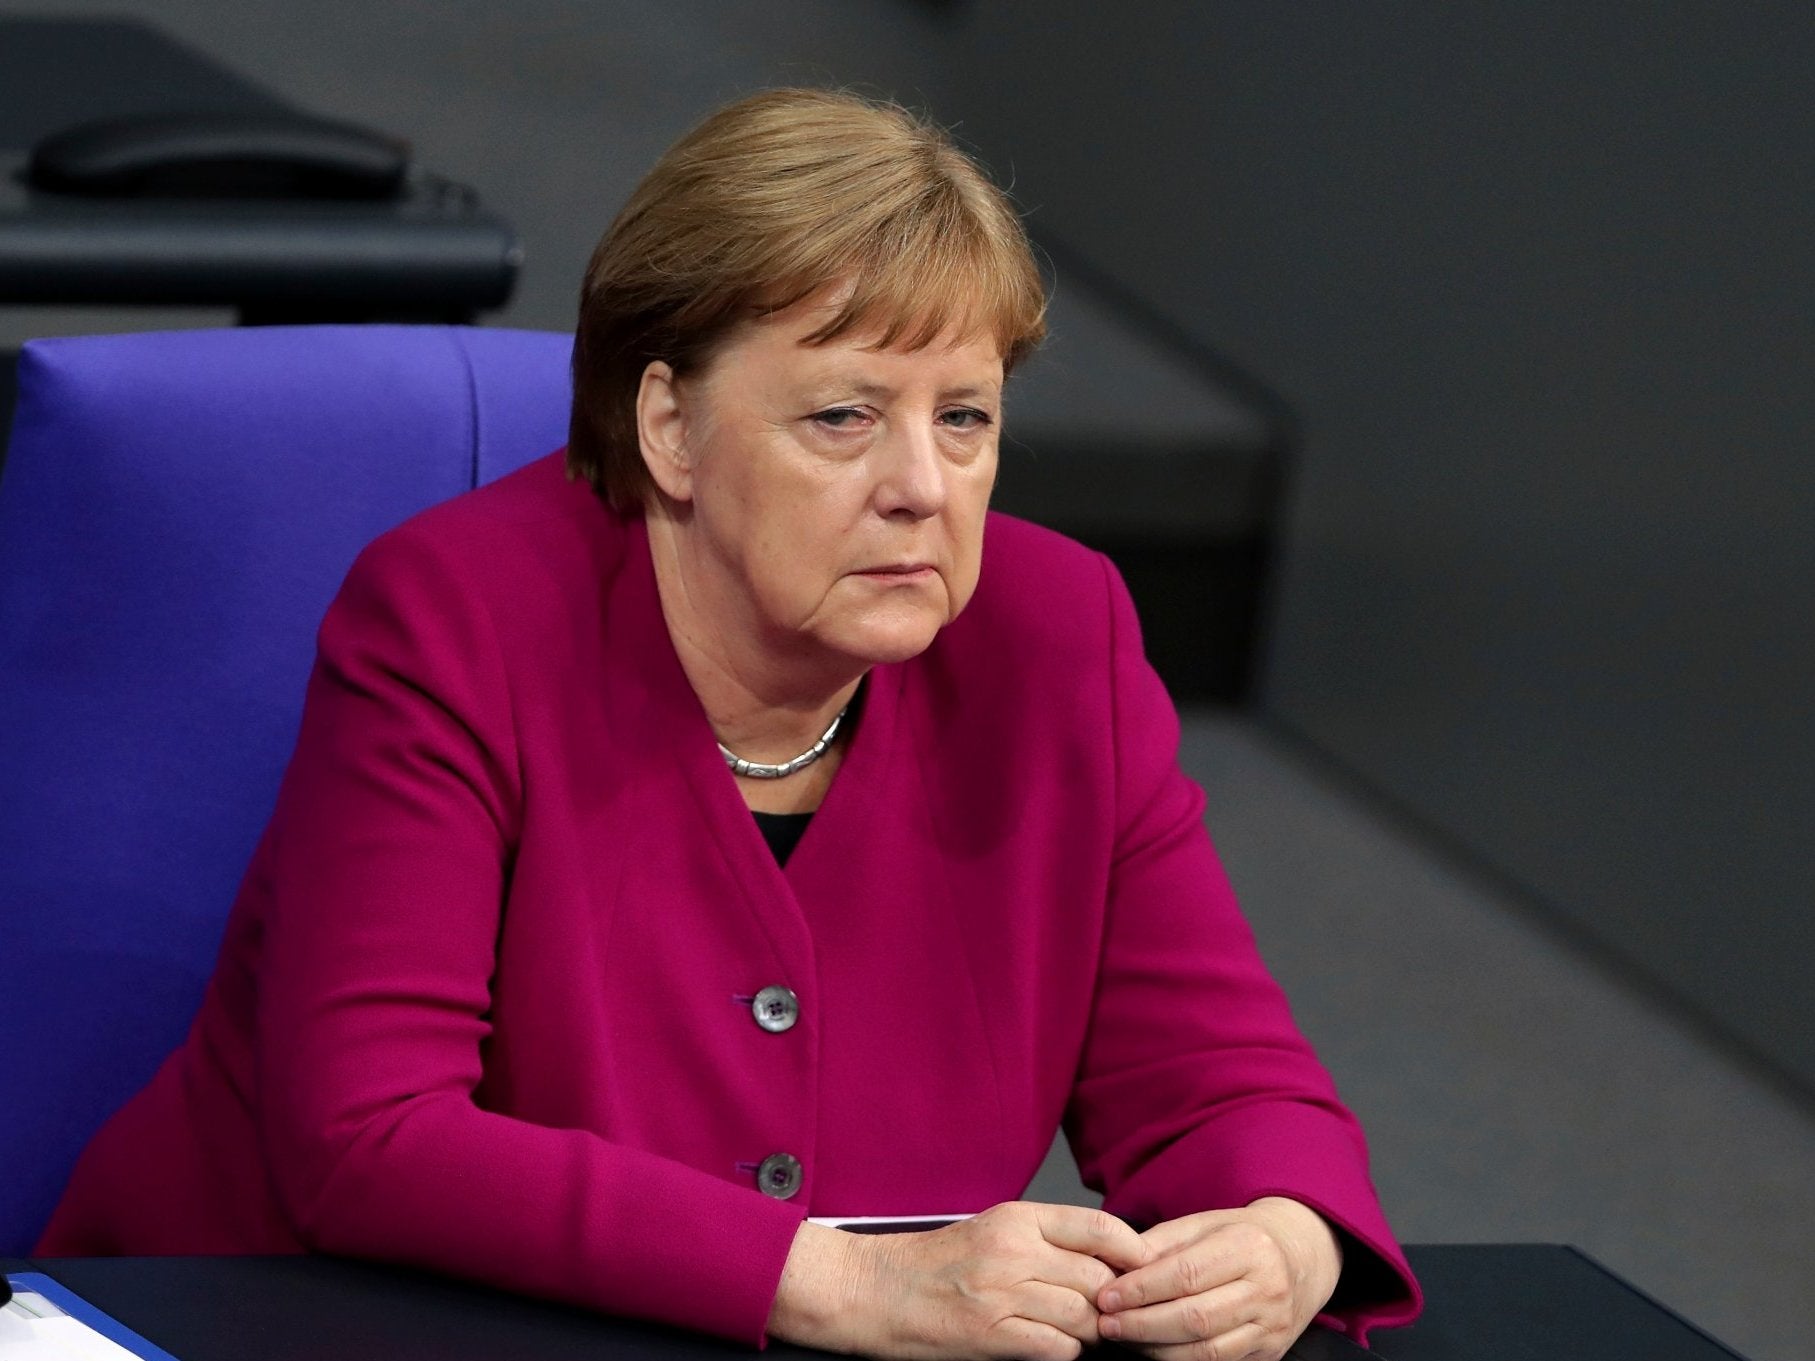 Angela Merkel was speaking ahead of the European parliament elections held between 23-26 May